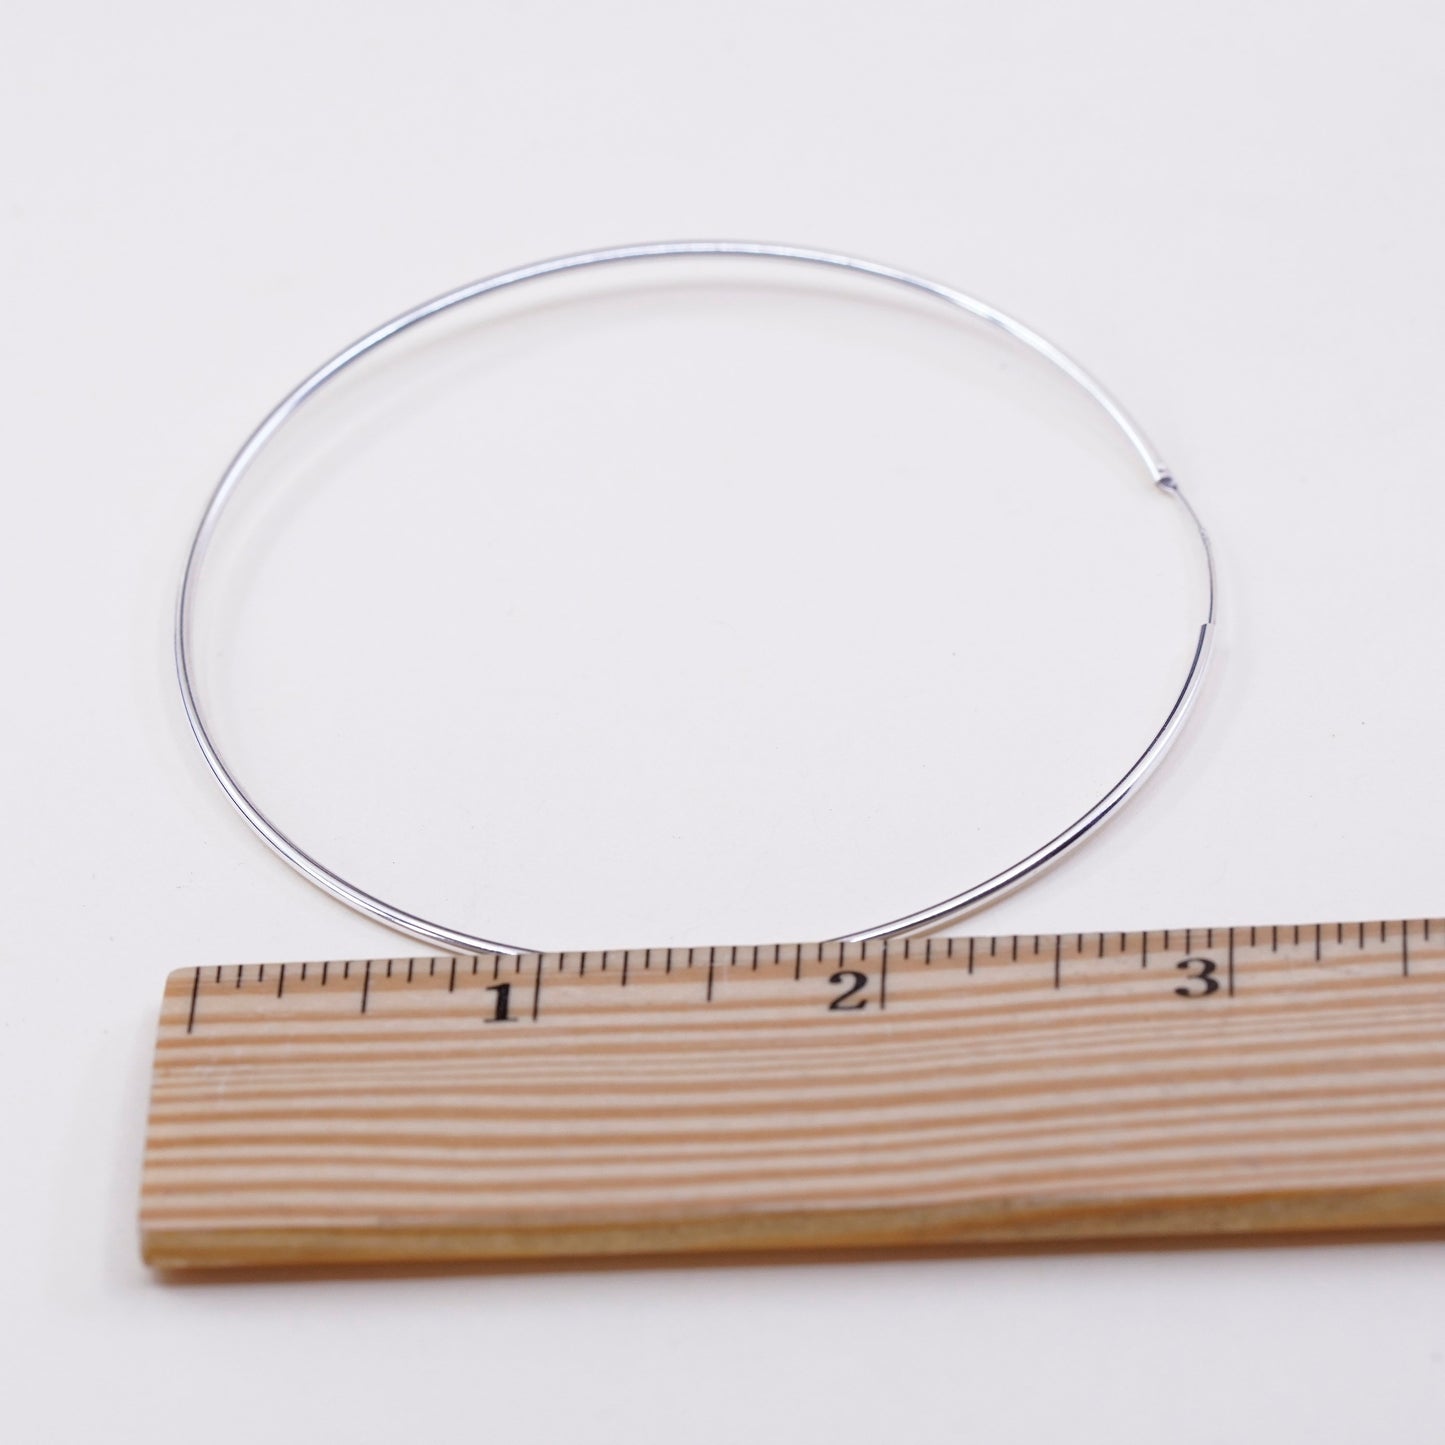 3” Vintage sterling silver loop earrings, fashion minimalist primitive hoops